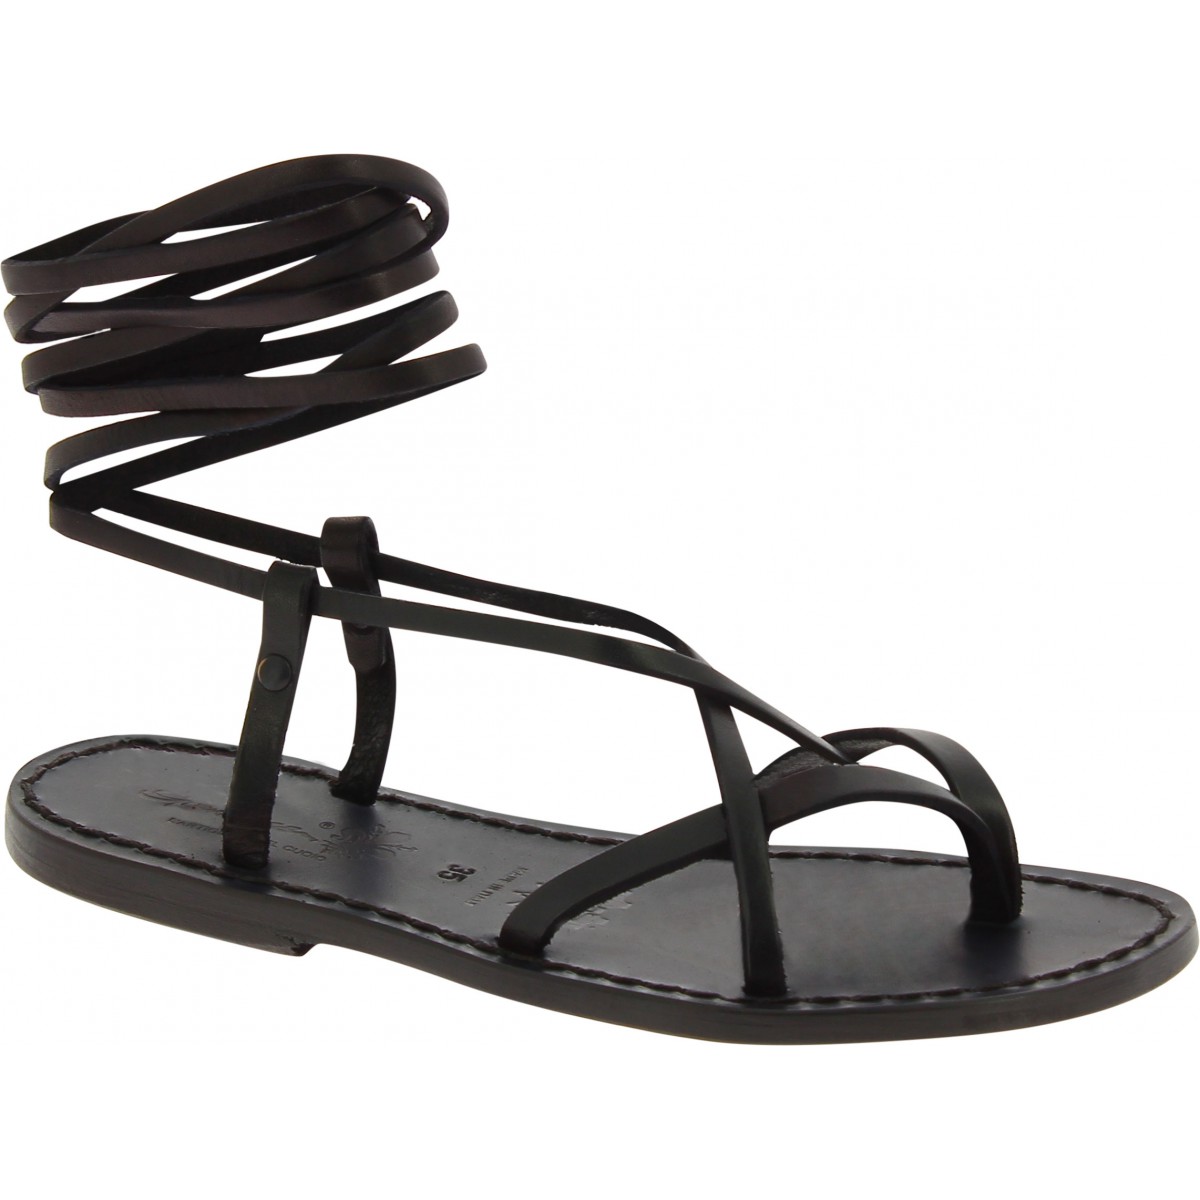 Buy Black Flat Sandals for Women by Blue Beauty Online | Ajio.com-hkpdtq2012.edu.vn